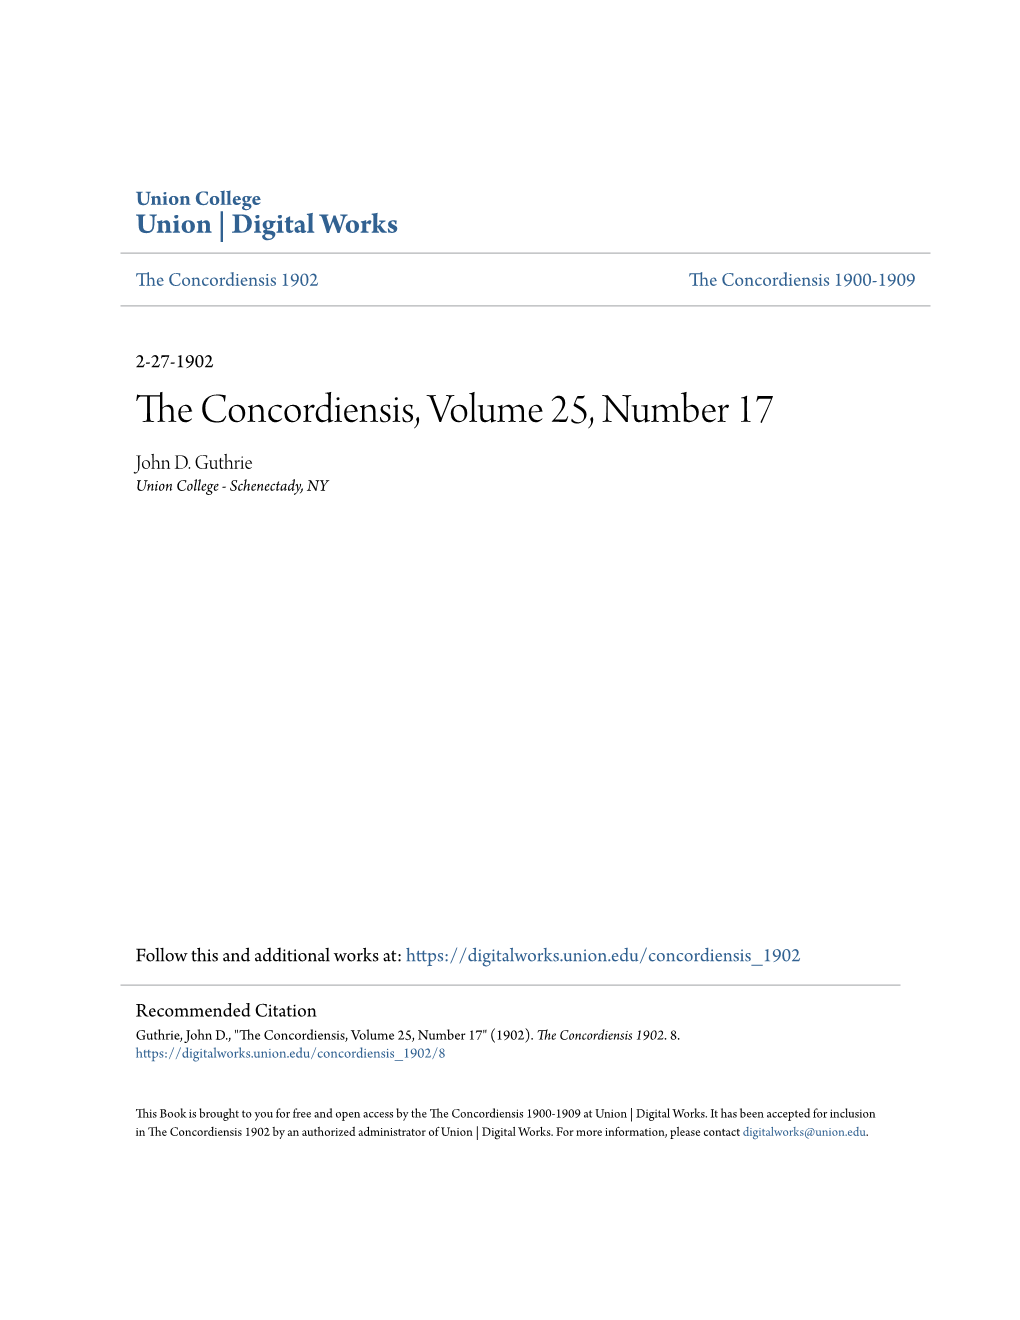 The Concordiensis, Volume 25, Number 17